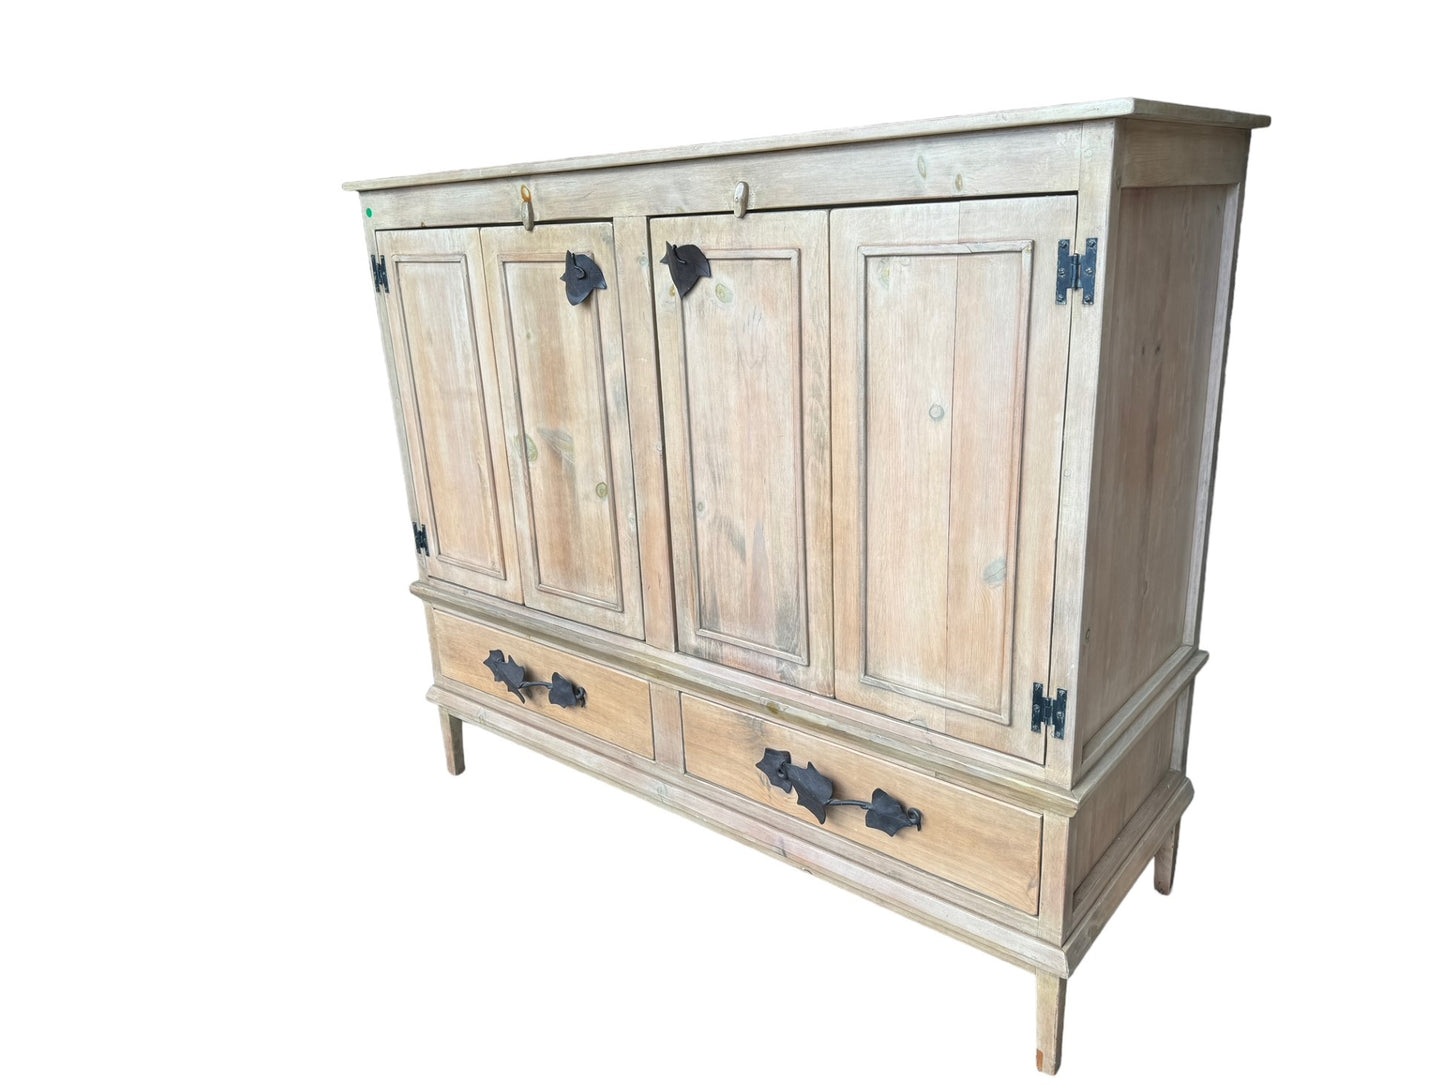 Rustic Double Cabinet Maple/Birch Light Wood Armoire EK221-227